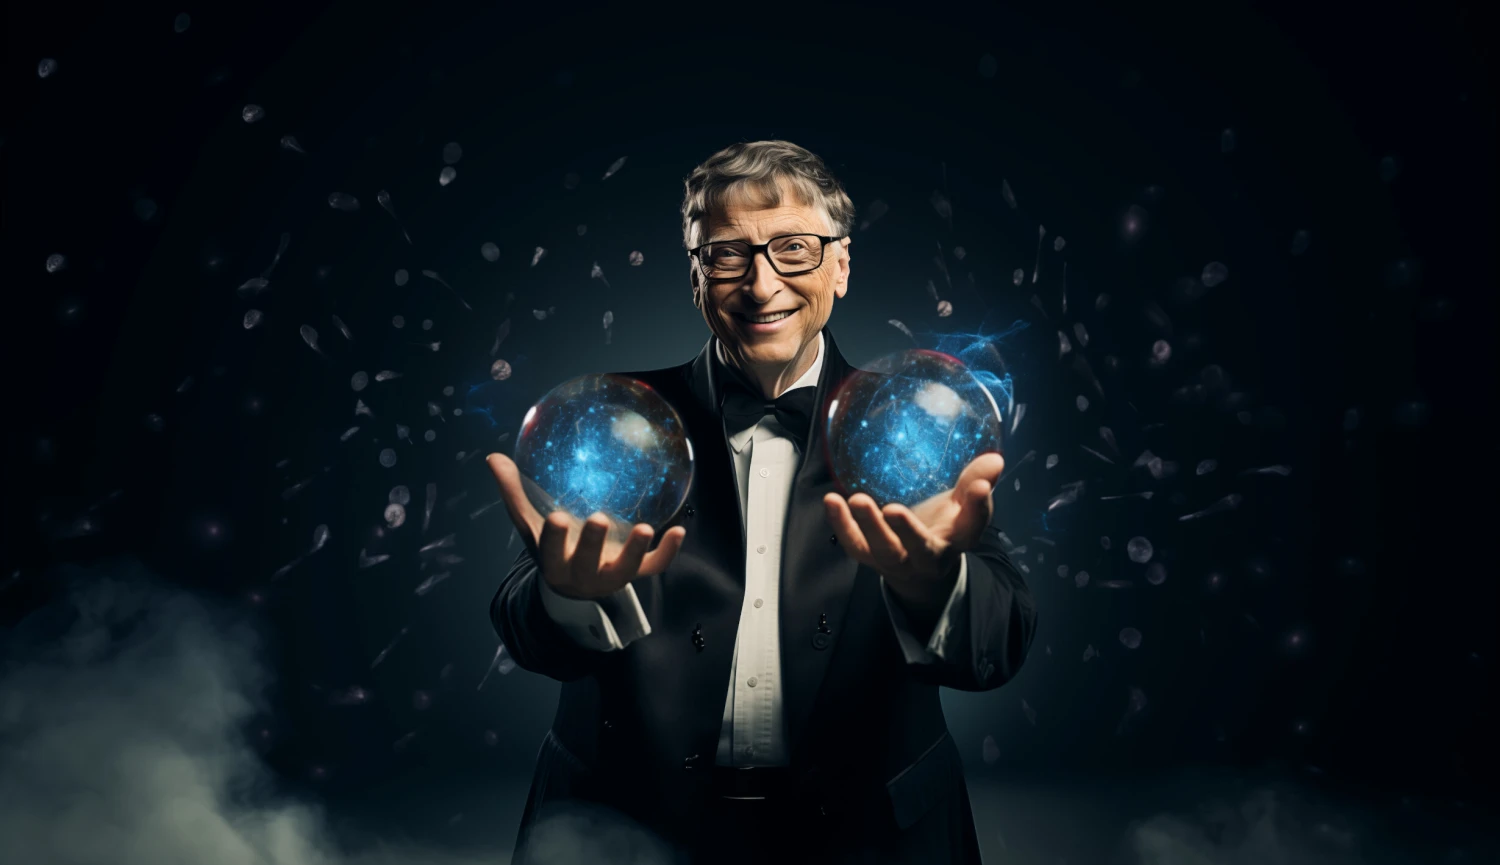 Vodíkový startup s penězi Billa Gatese tajil existenci. Teď získal pět miliard